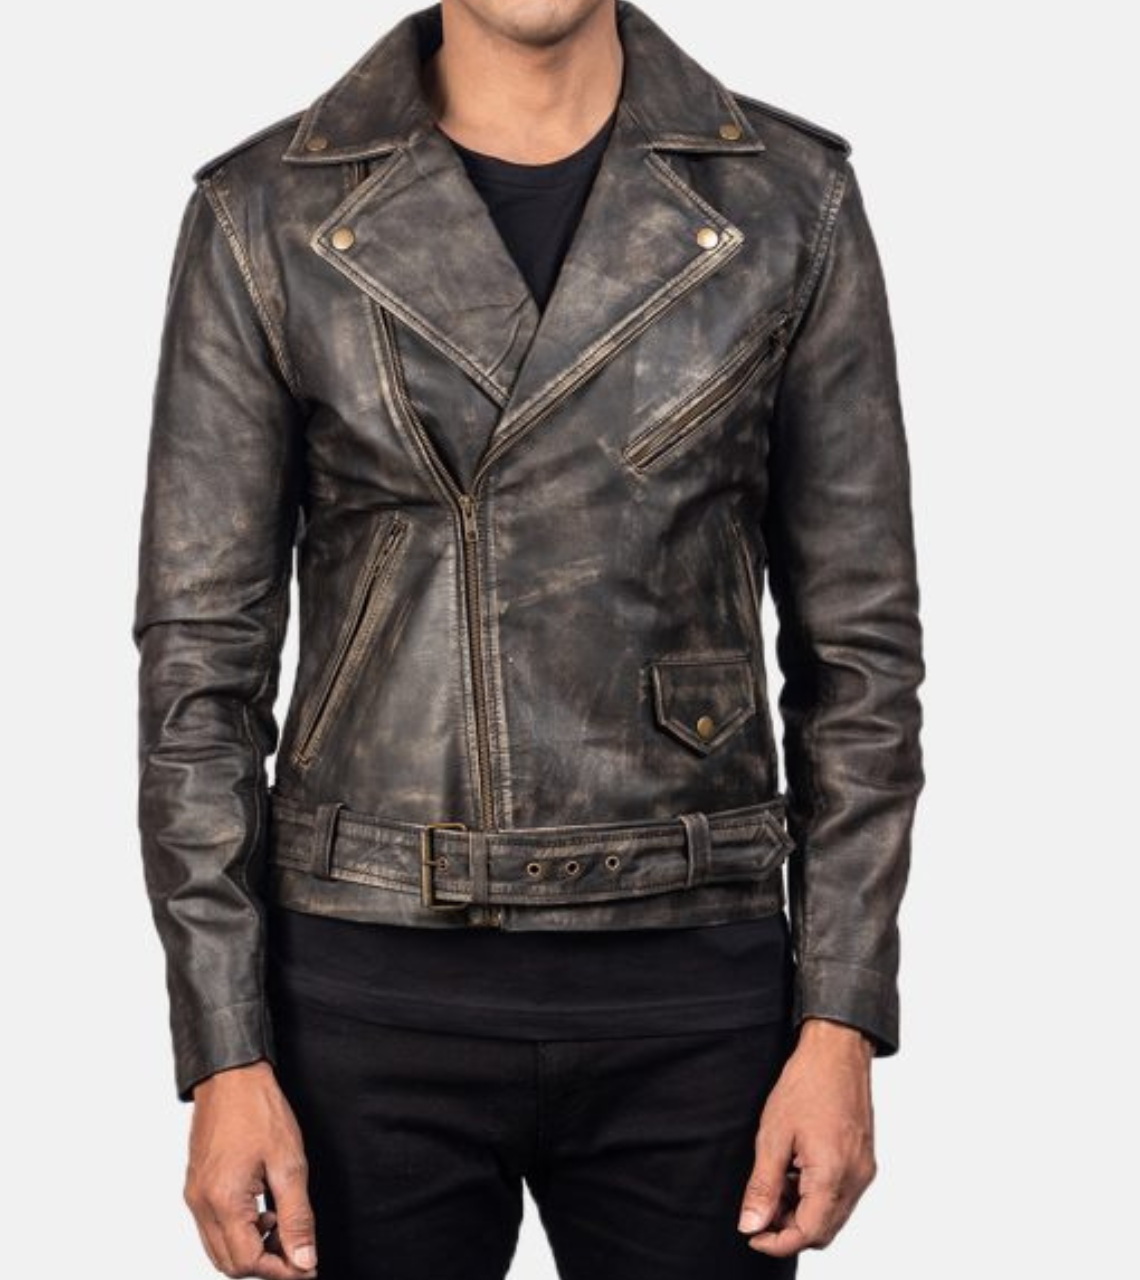 Distressed Leather Biker Jacket For Men